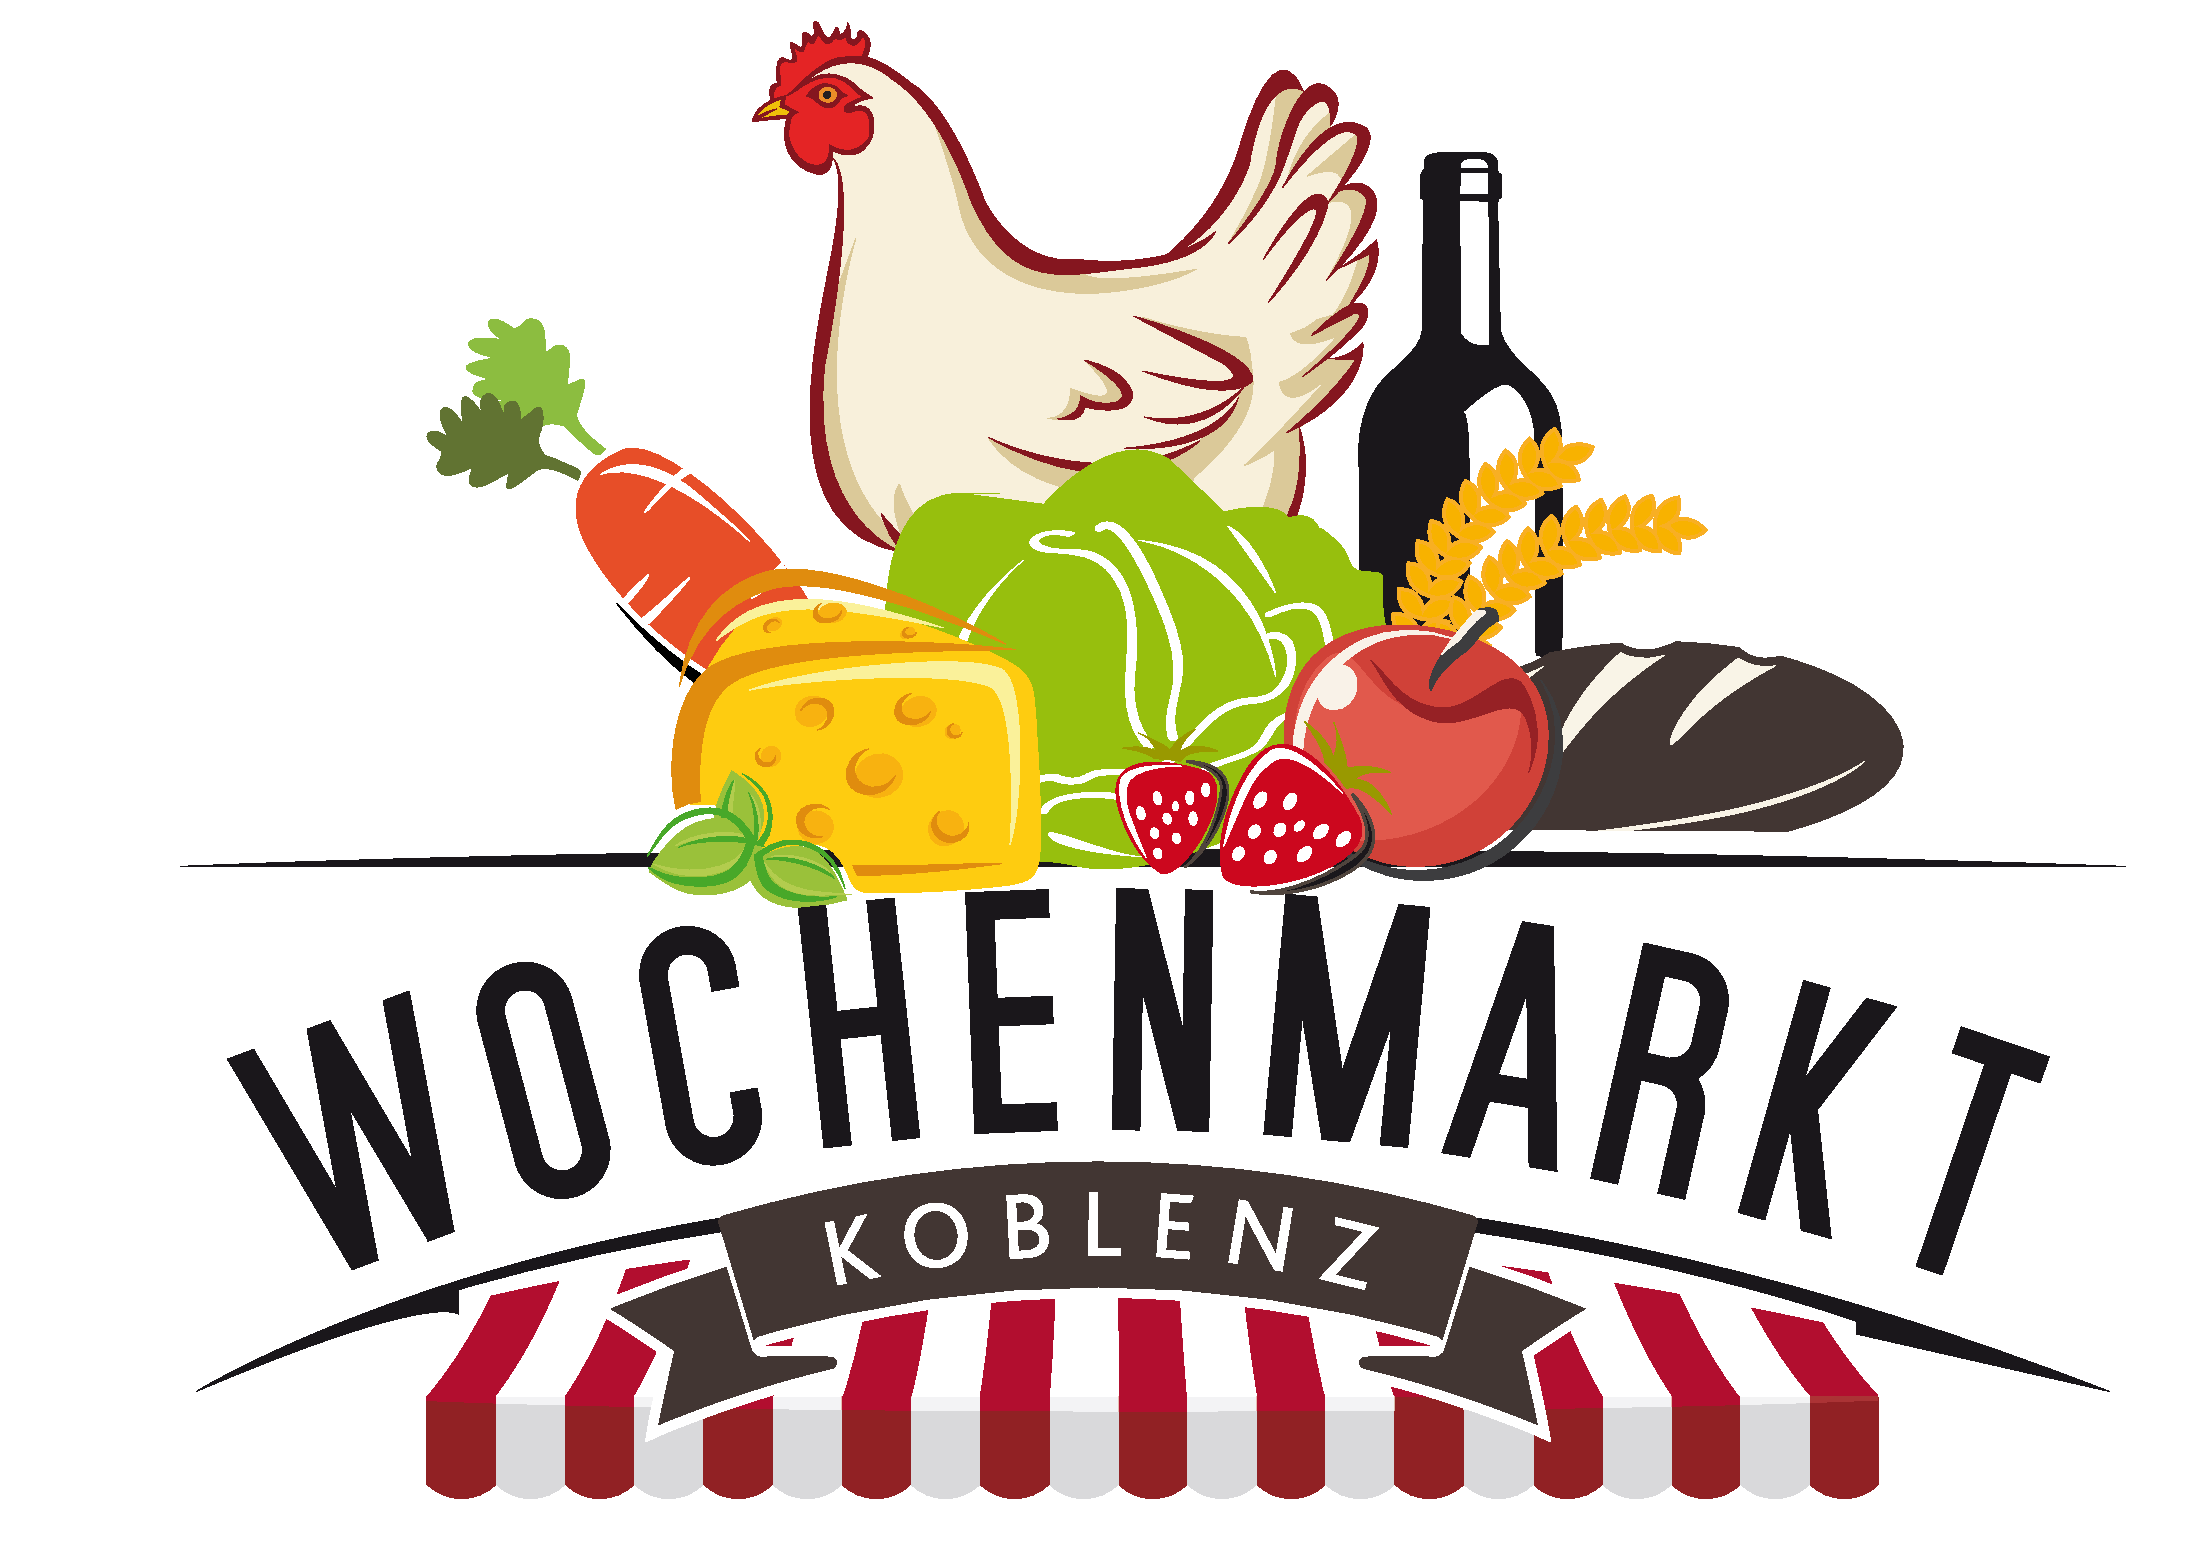 Das Logo des Wochenmarktes Koblenz zeigt einen Marktstand mit einem Hahn, Gemüse, Brot, Käse und Spirituosen.